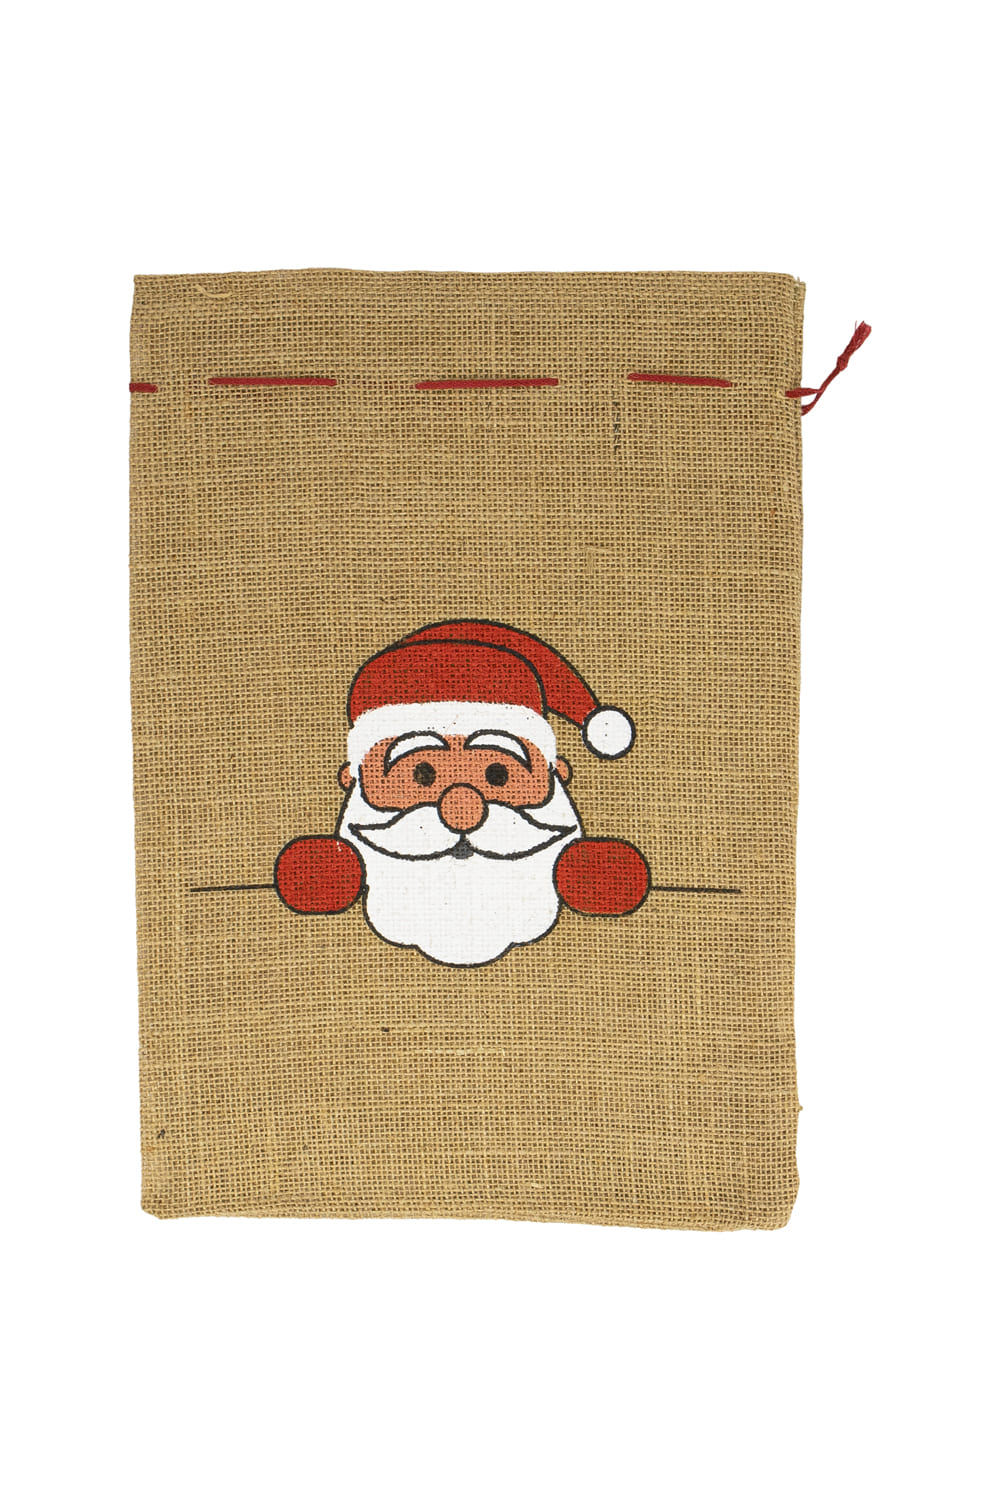 Der Chlaussack ist aus Jute und ist ca. 25 x 35 cm gross. Auf dem Jutesack ist ein Samichlaus aufgedruckt. Eine originelle und beliebte Geschenkverpackung fuer den Samichlaus Tag und die Weihnachtszeit. Einfach mit Leckereien und kleinen Geschenken befuellen! 